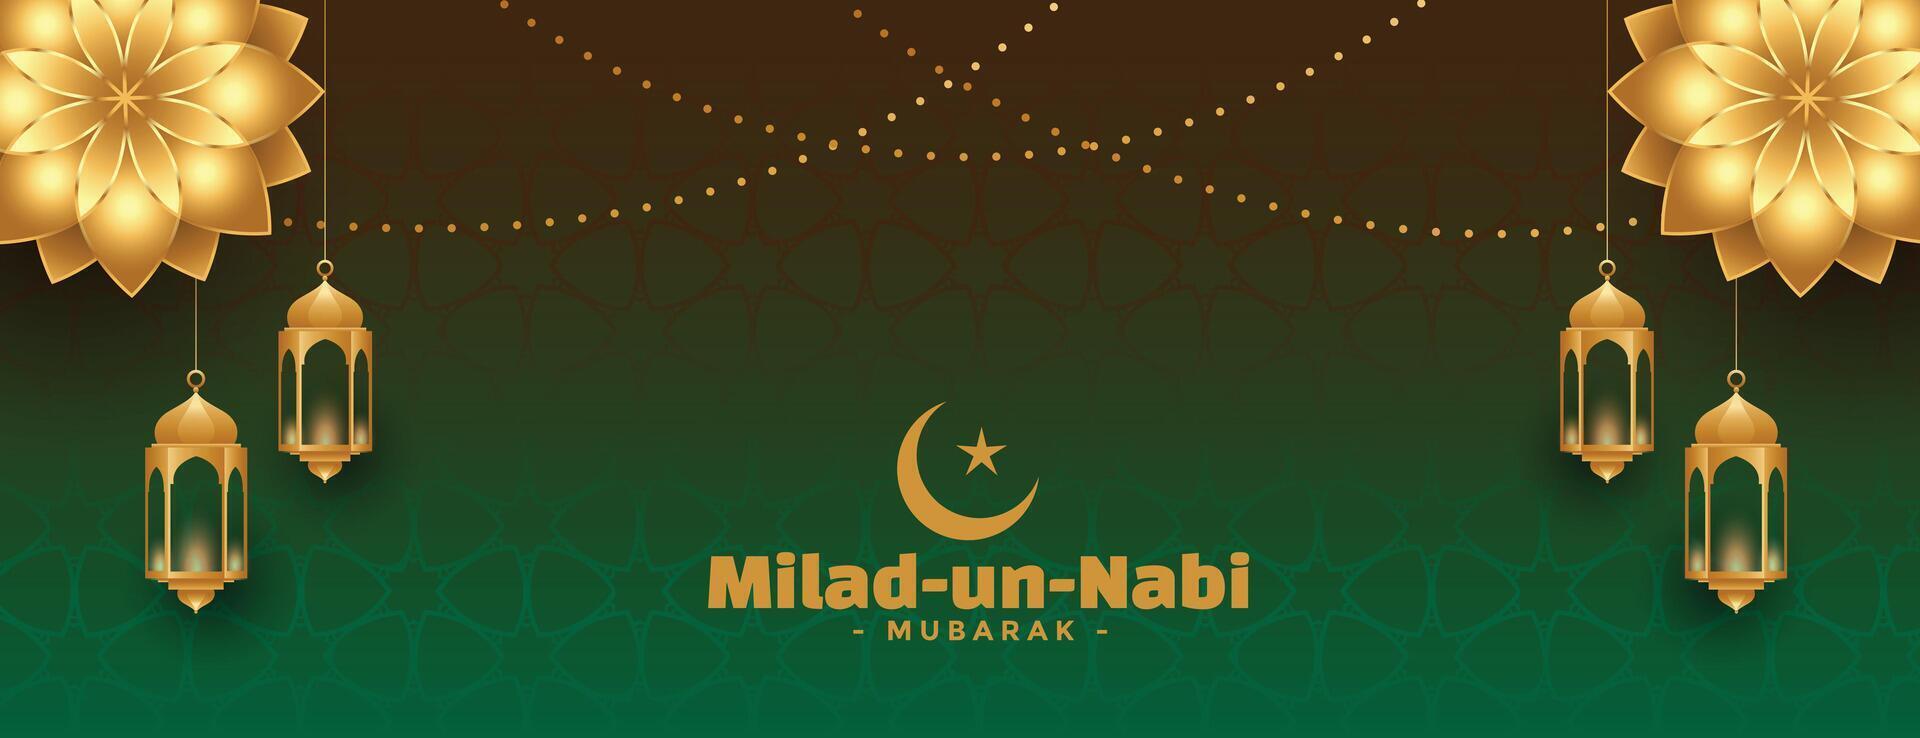 Milad un Nabi Mubarak wünscht sich Banner mit golden Blume vektor